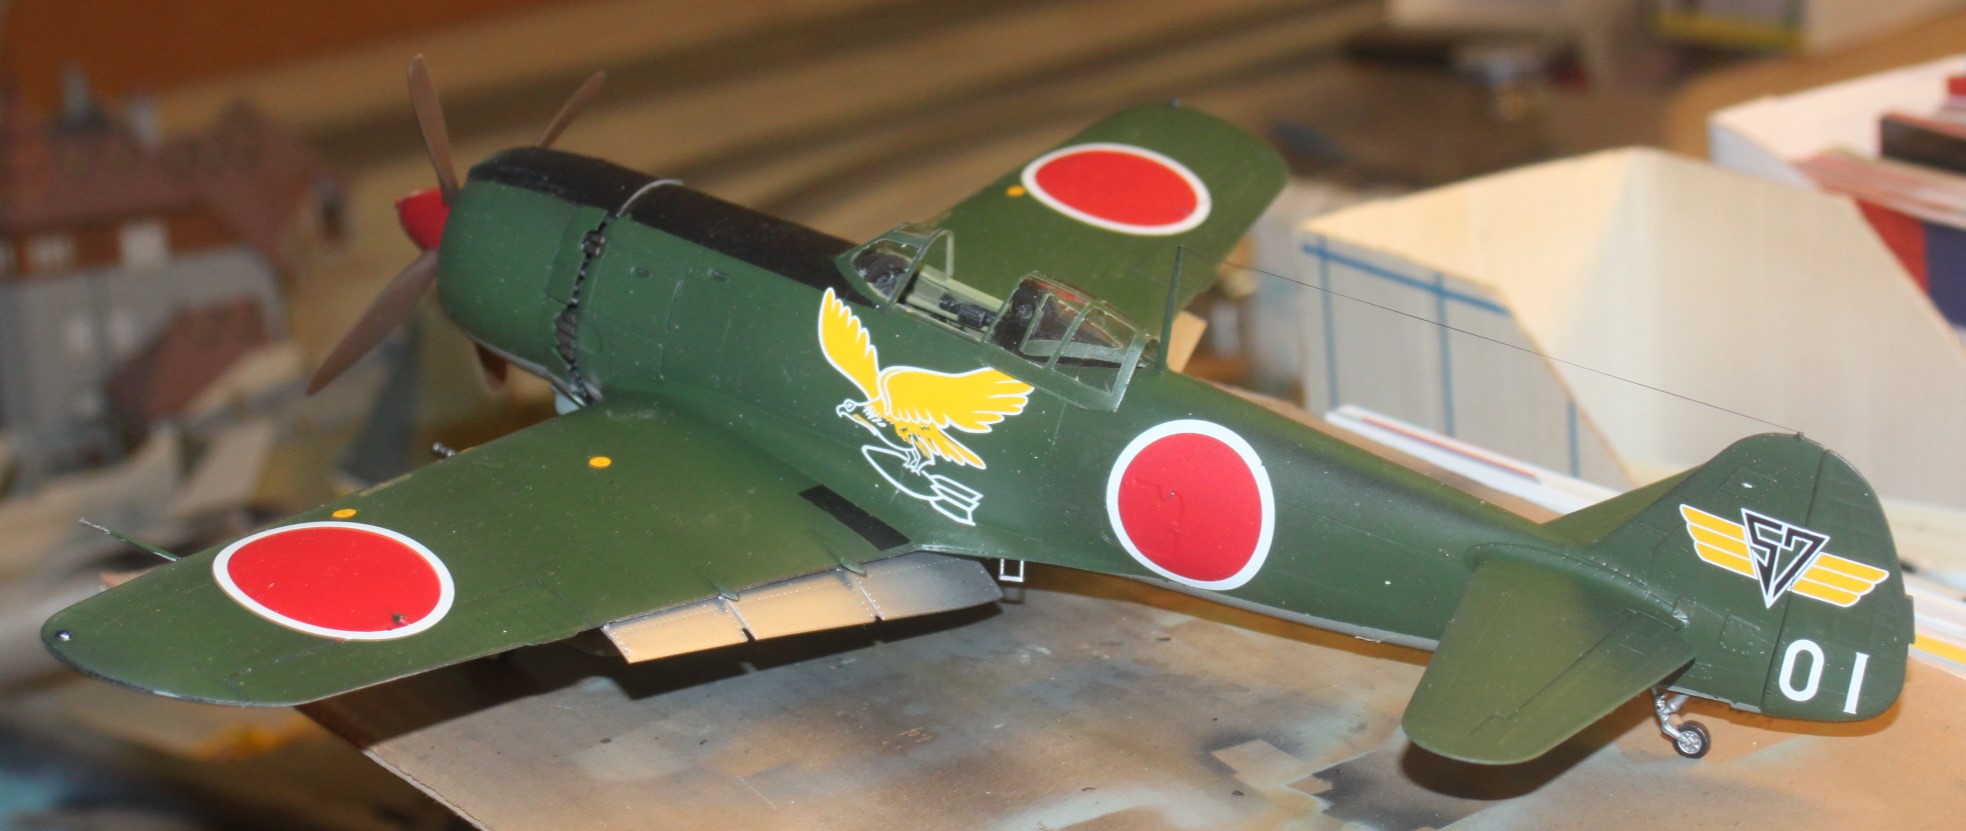 Nakajima Ki-84 Hayate (Frank), Hasgawa 1/32 53606619849_080cd512da_k